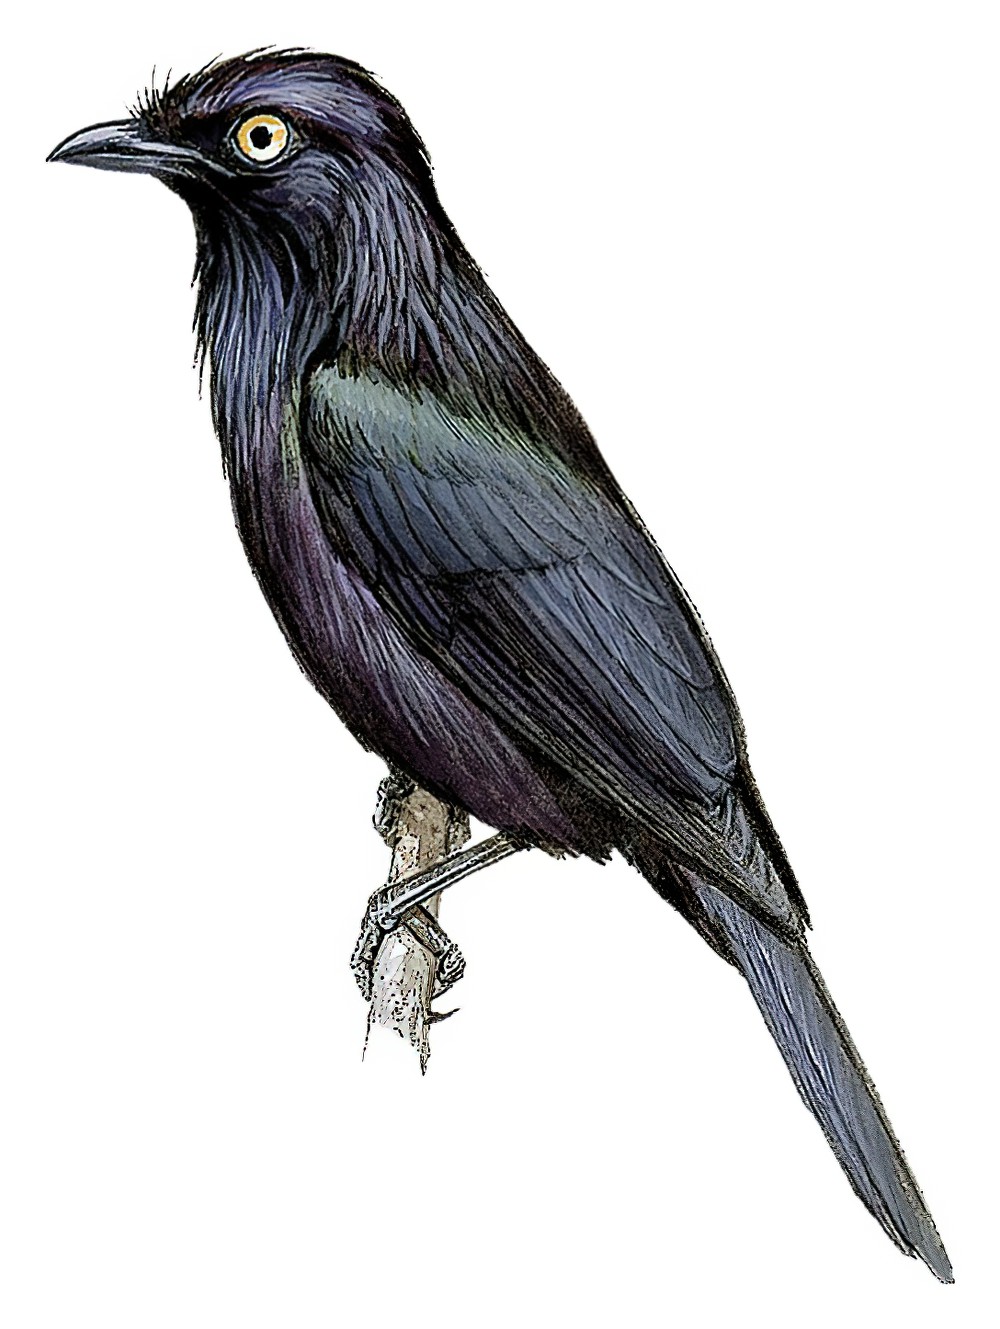 黄眼辉椋鸟 / Yellow-eyed Starling / Aplonis mystacea